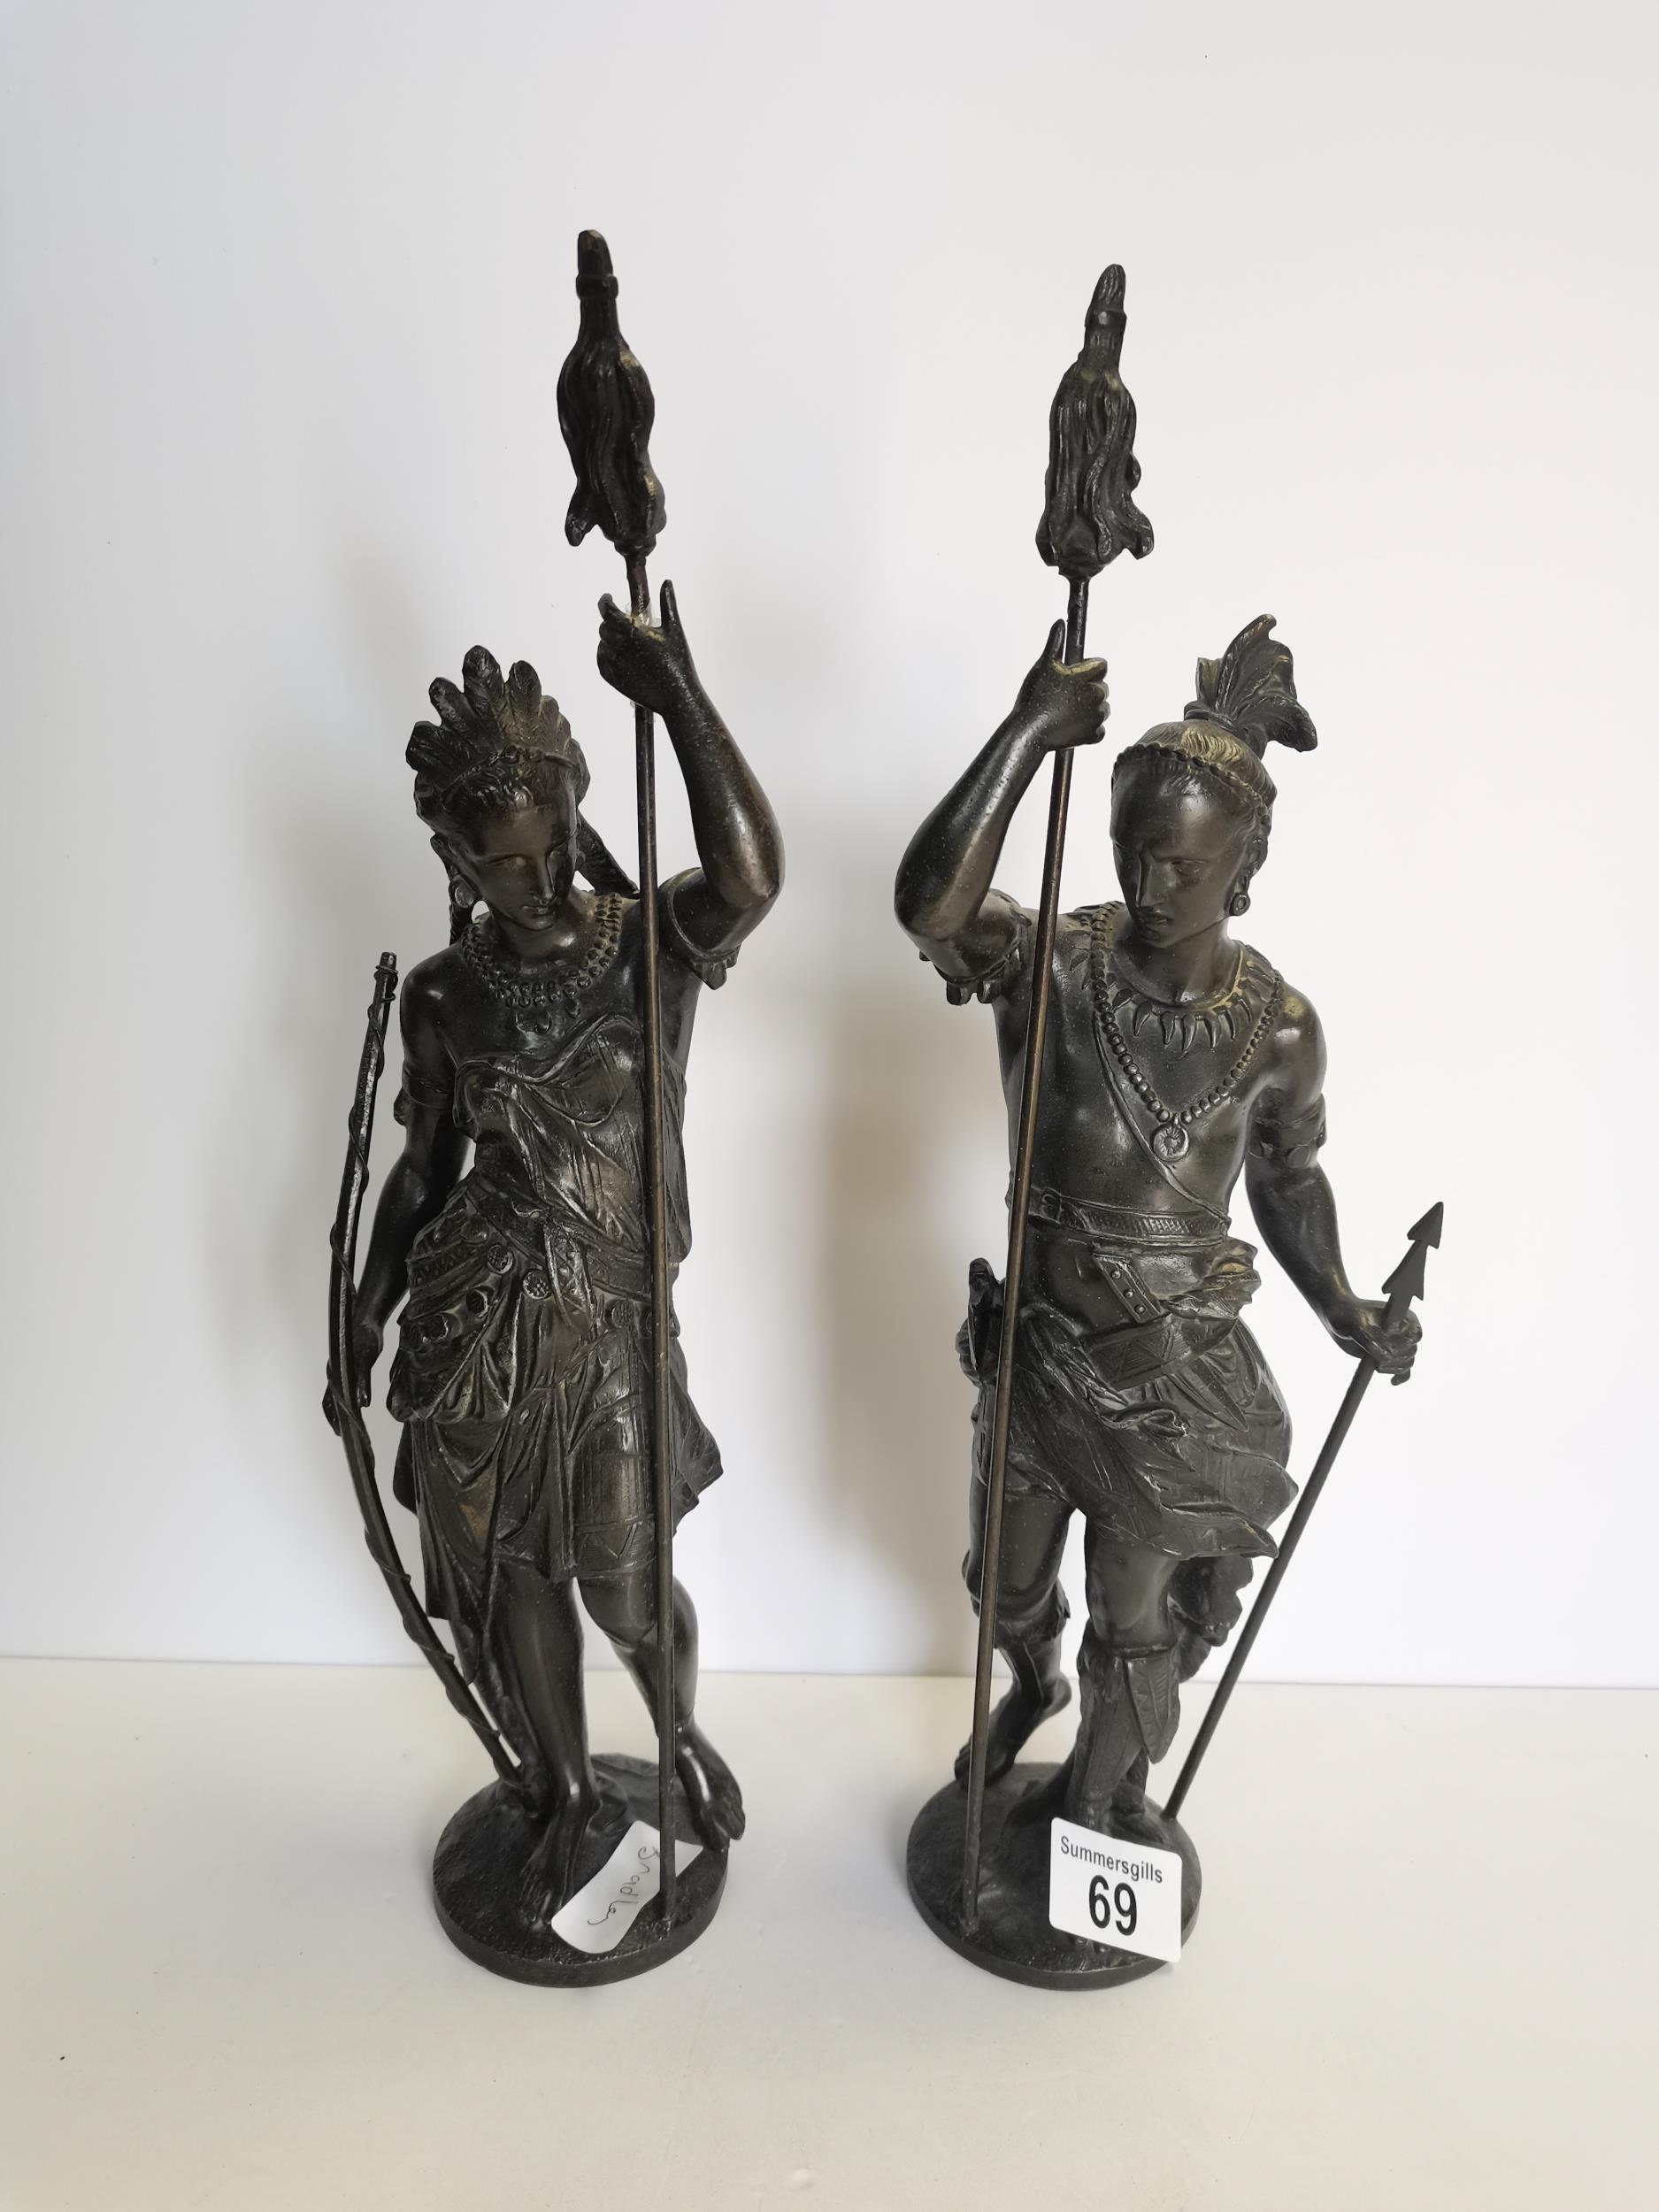 x2 spelter sculptures of soldiers 38cm